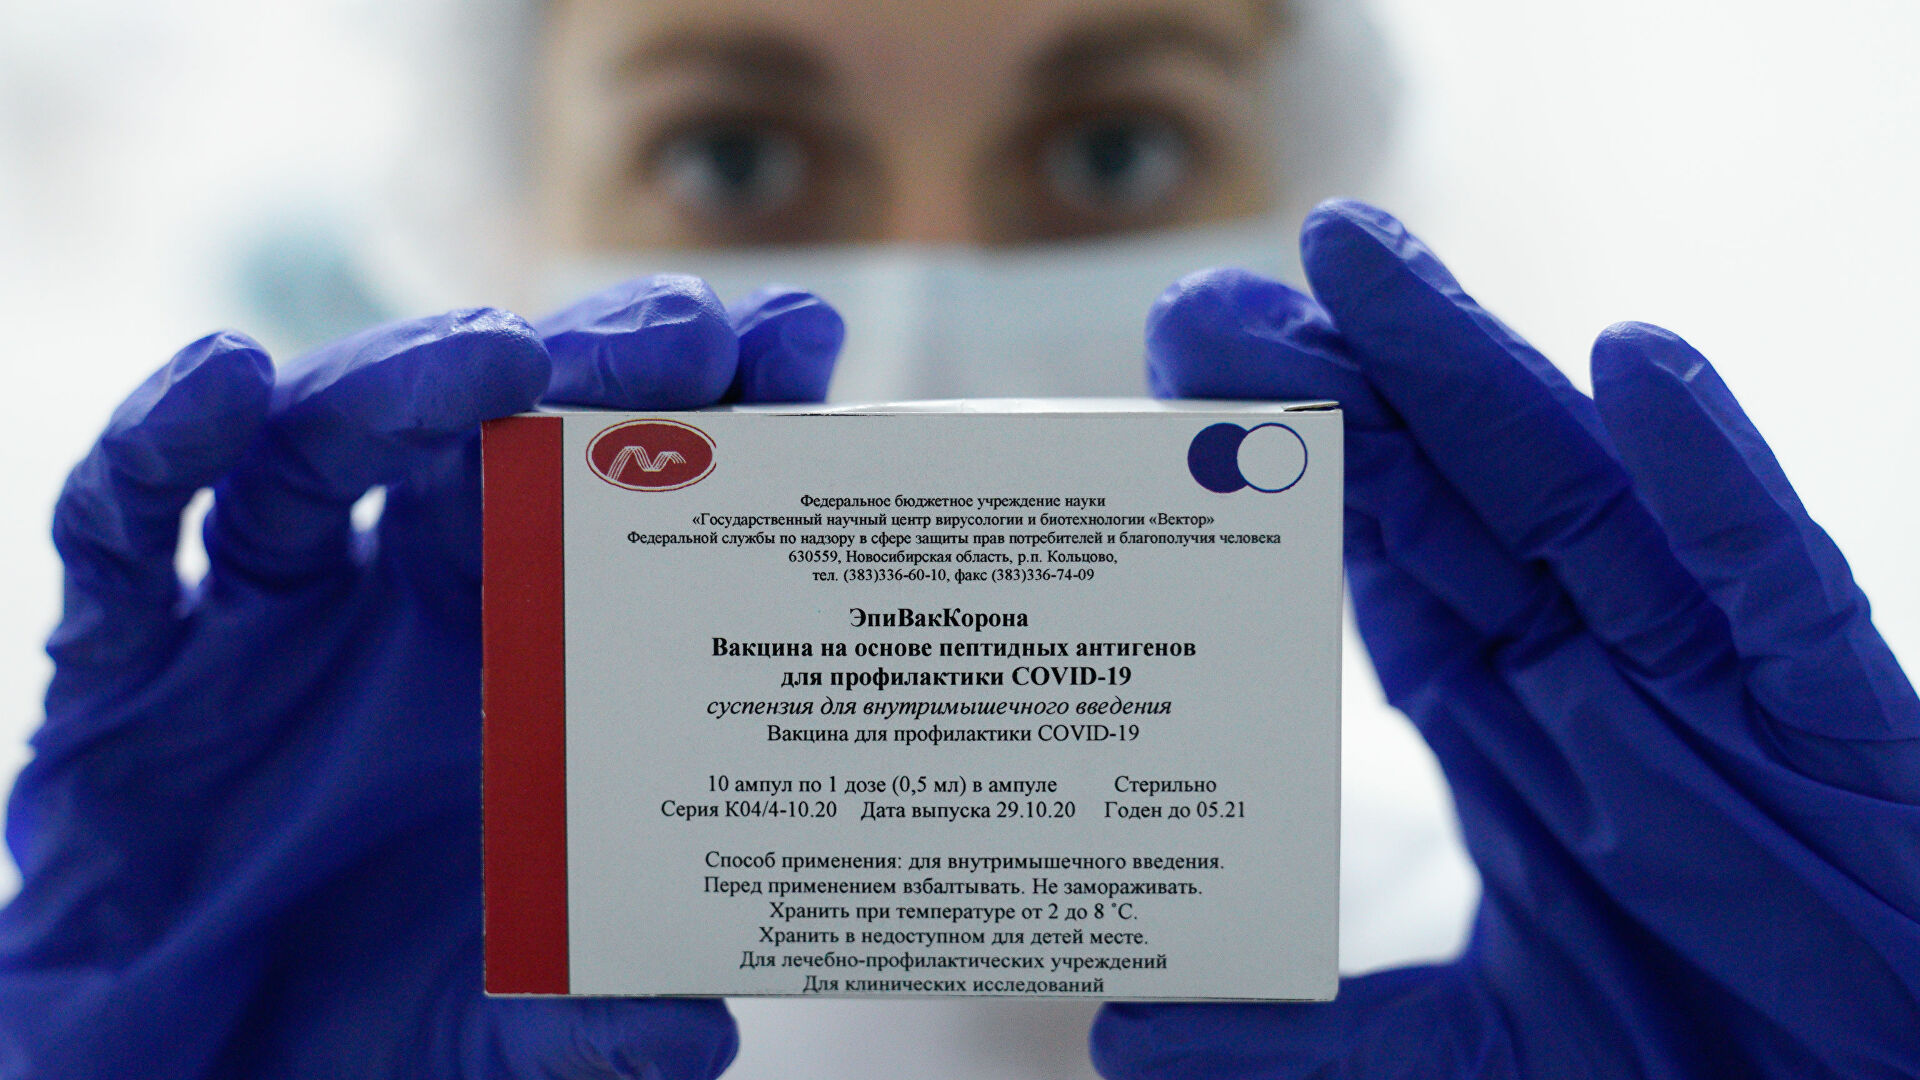 Ρωσία: Το CoviVac είναι κατάλληλο για χορήγηση ως ενισχυτική δόση σε όσους έχουν εμβολιαστεί με άλλα σκευάσματα